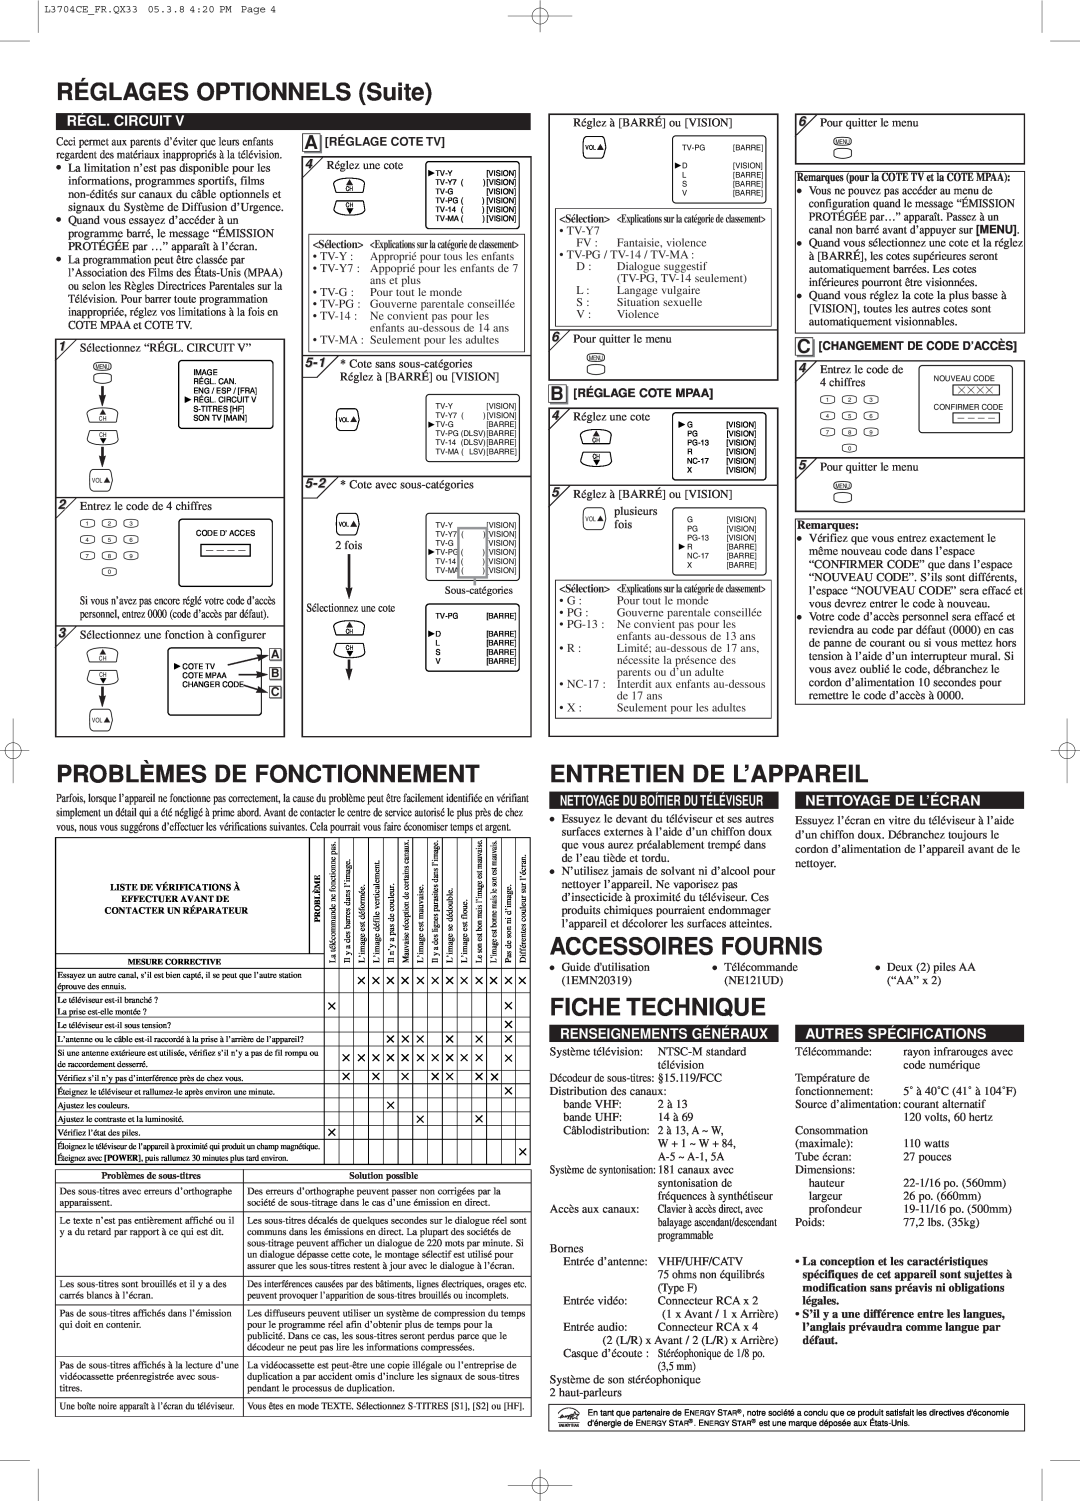 Sylvania C6427TF RÉGLAGES OPTIONNELS Suite, Problèmes De Fonctionnement, Entretien De L’Appareil, Accessoires Fournis 